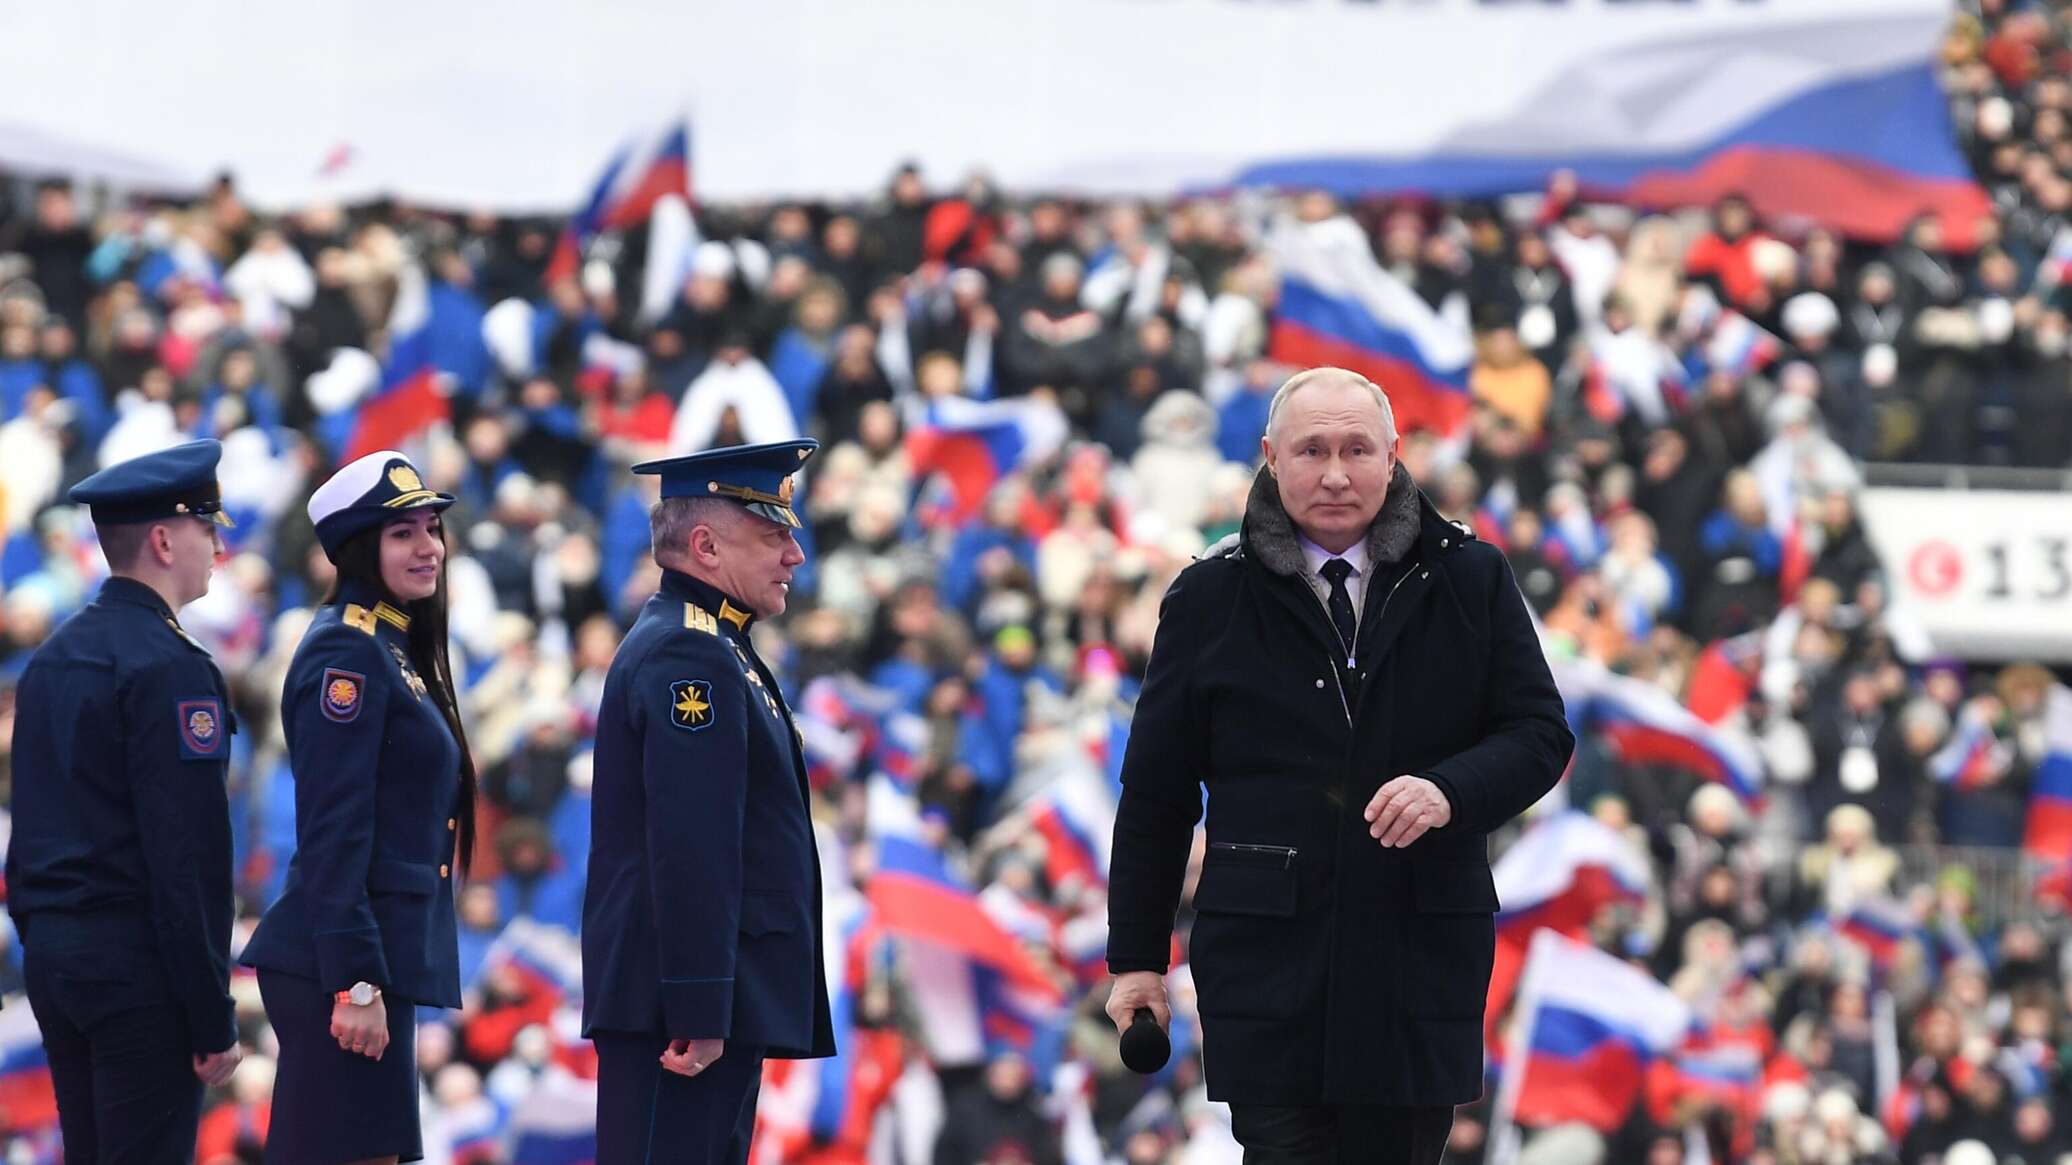 زعماء ورؤساء يهنئون بوتين بفوزه الساحق في الانتخابات الرئاسية الروسية